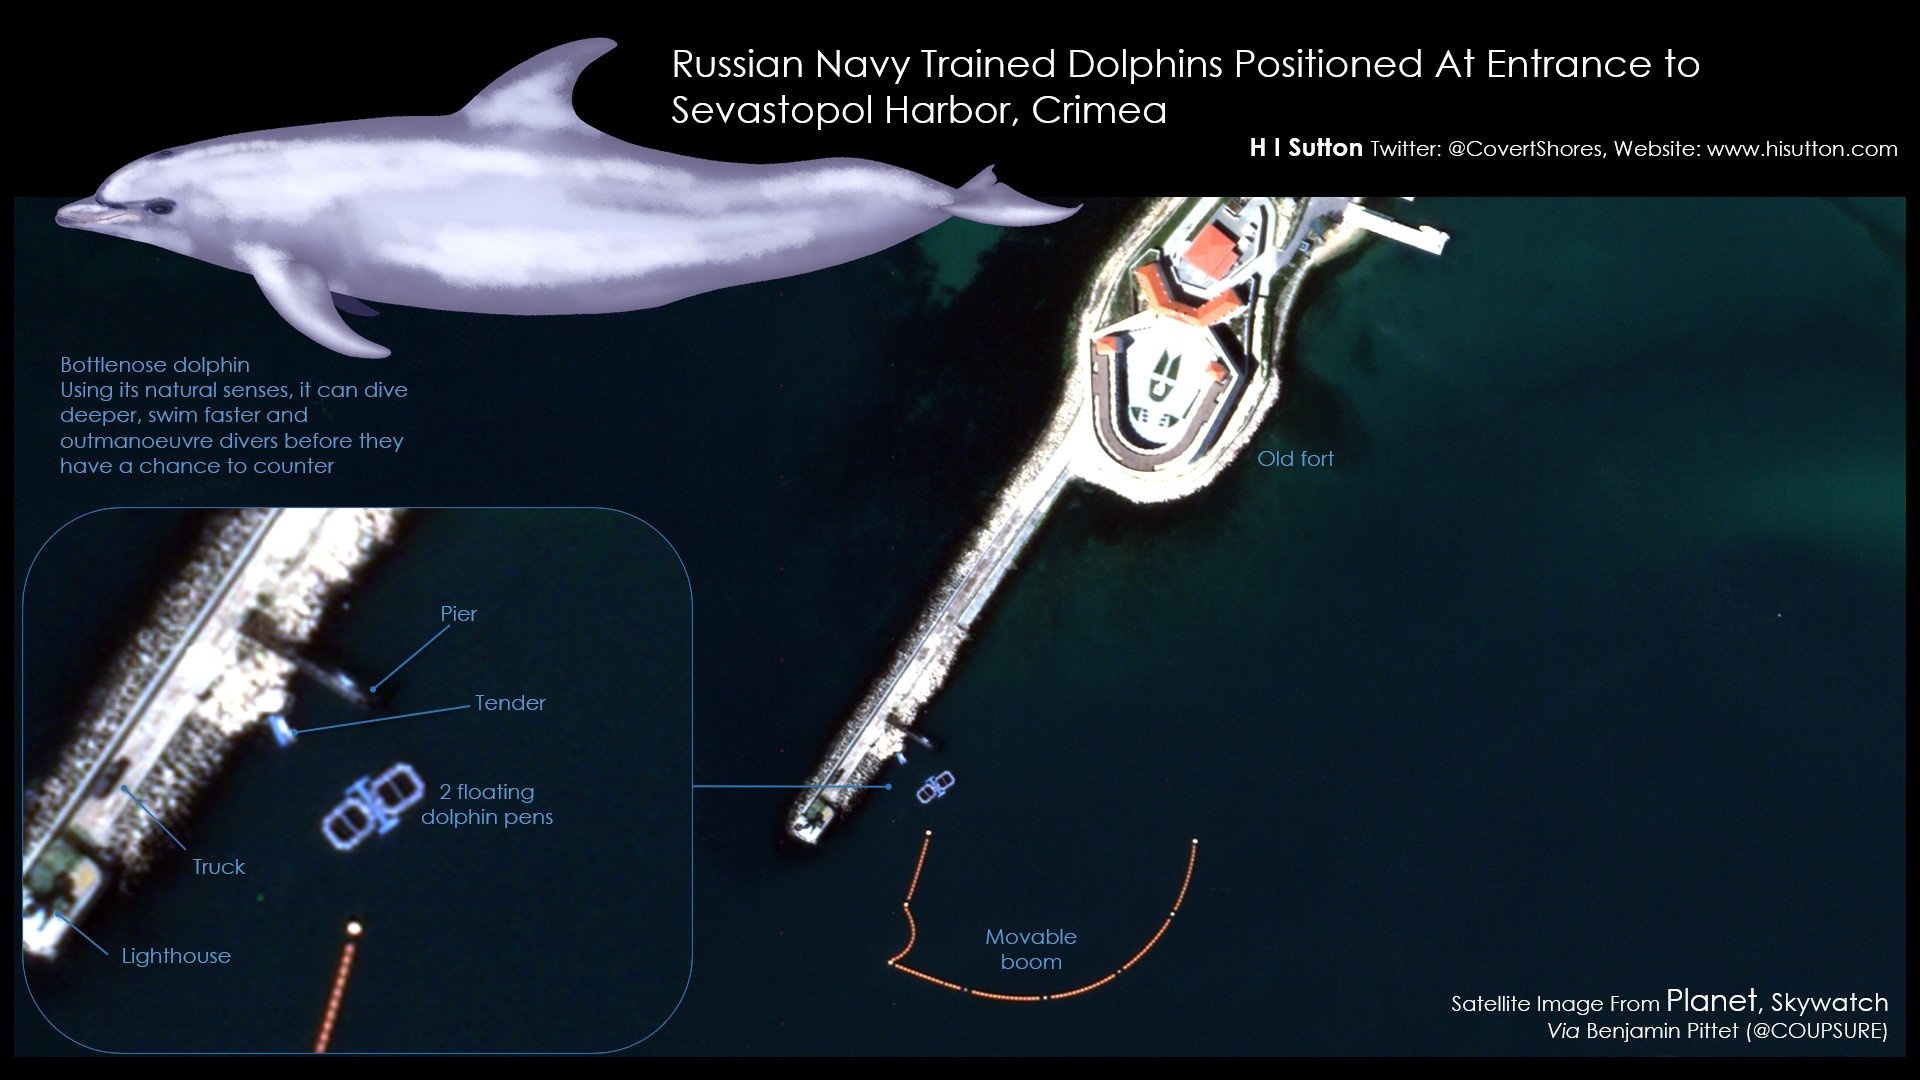 Ilustración de HI Sutton para USNI News donde se analizan las imágenes de satélite que mostrarían la presencia de delfines entrenados por los rusos en Sebastopol.